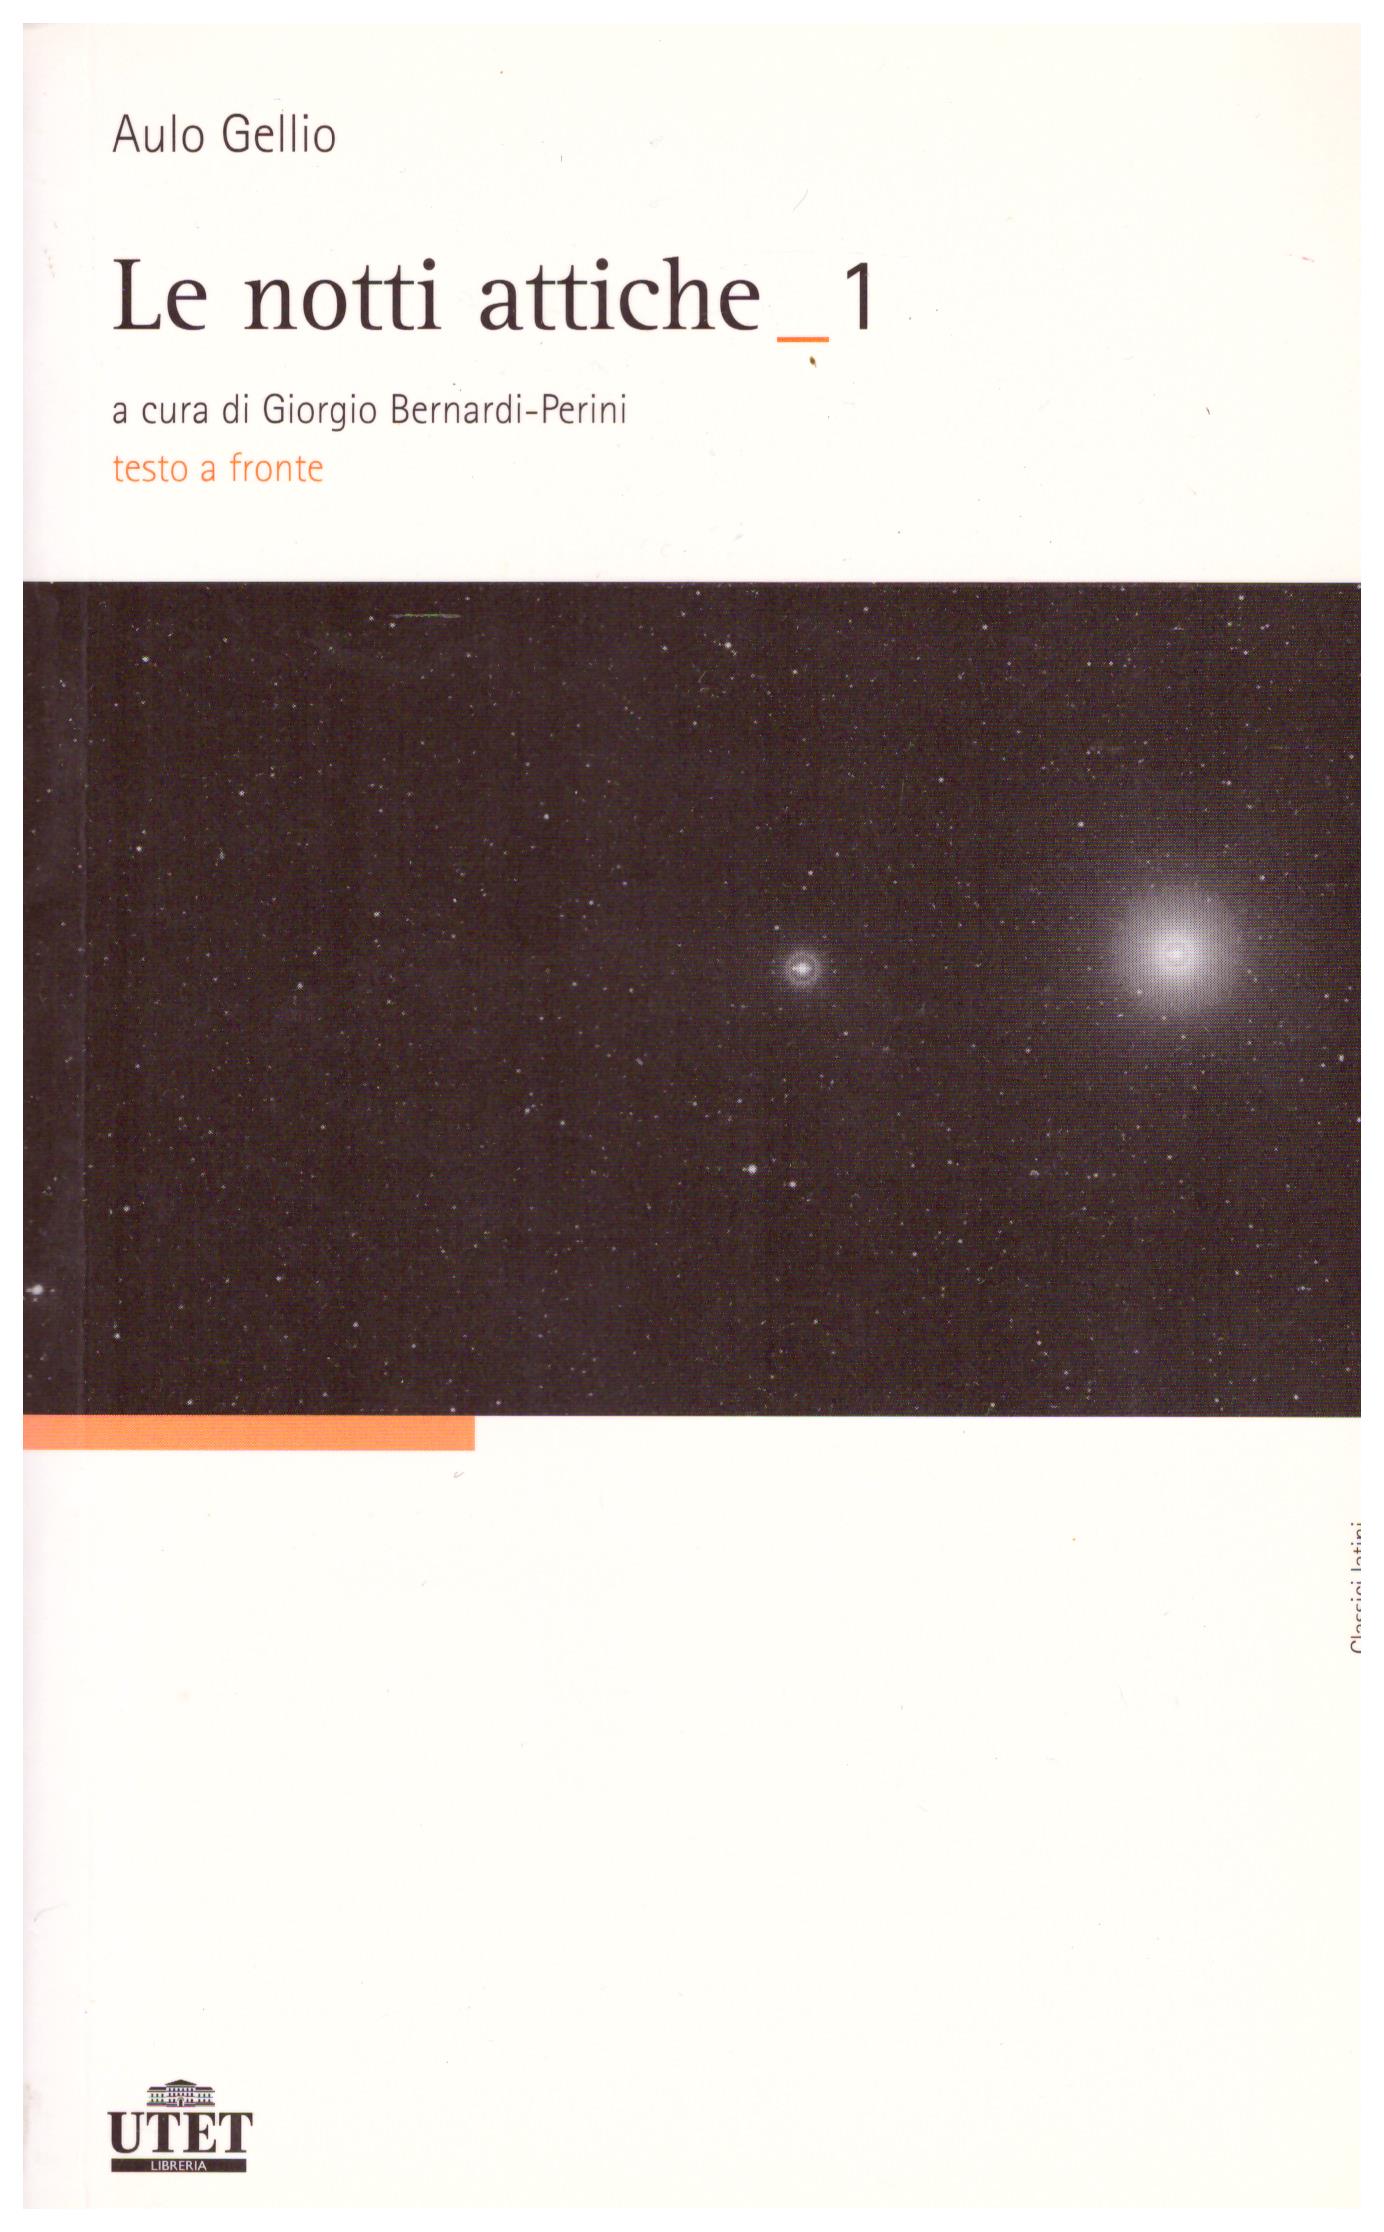 Titolo: Le notti attiche in 2 volumi Autore: Aulo Gellio Editore: Utet, 2007